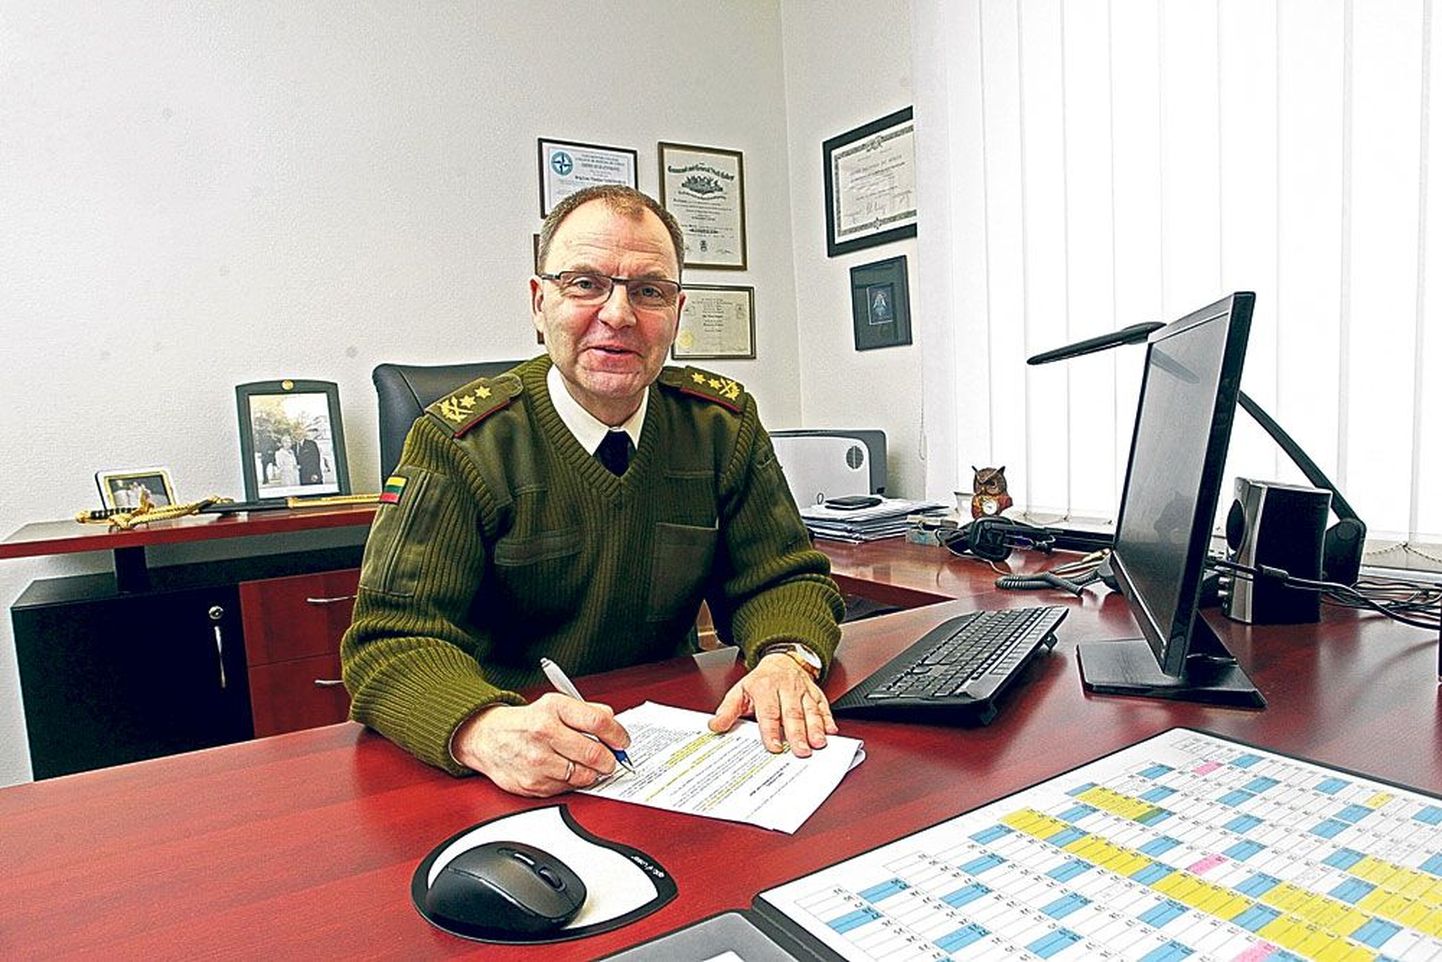 Kindralmajor Vaikšnoras ütles, et Tartu on suurepärane koht, kus töötada ja elada. Tema juhitava Balti kaitsekolledži lõpetanute arv ületab selle aastaga tuhande piiri.